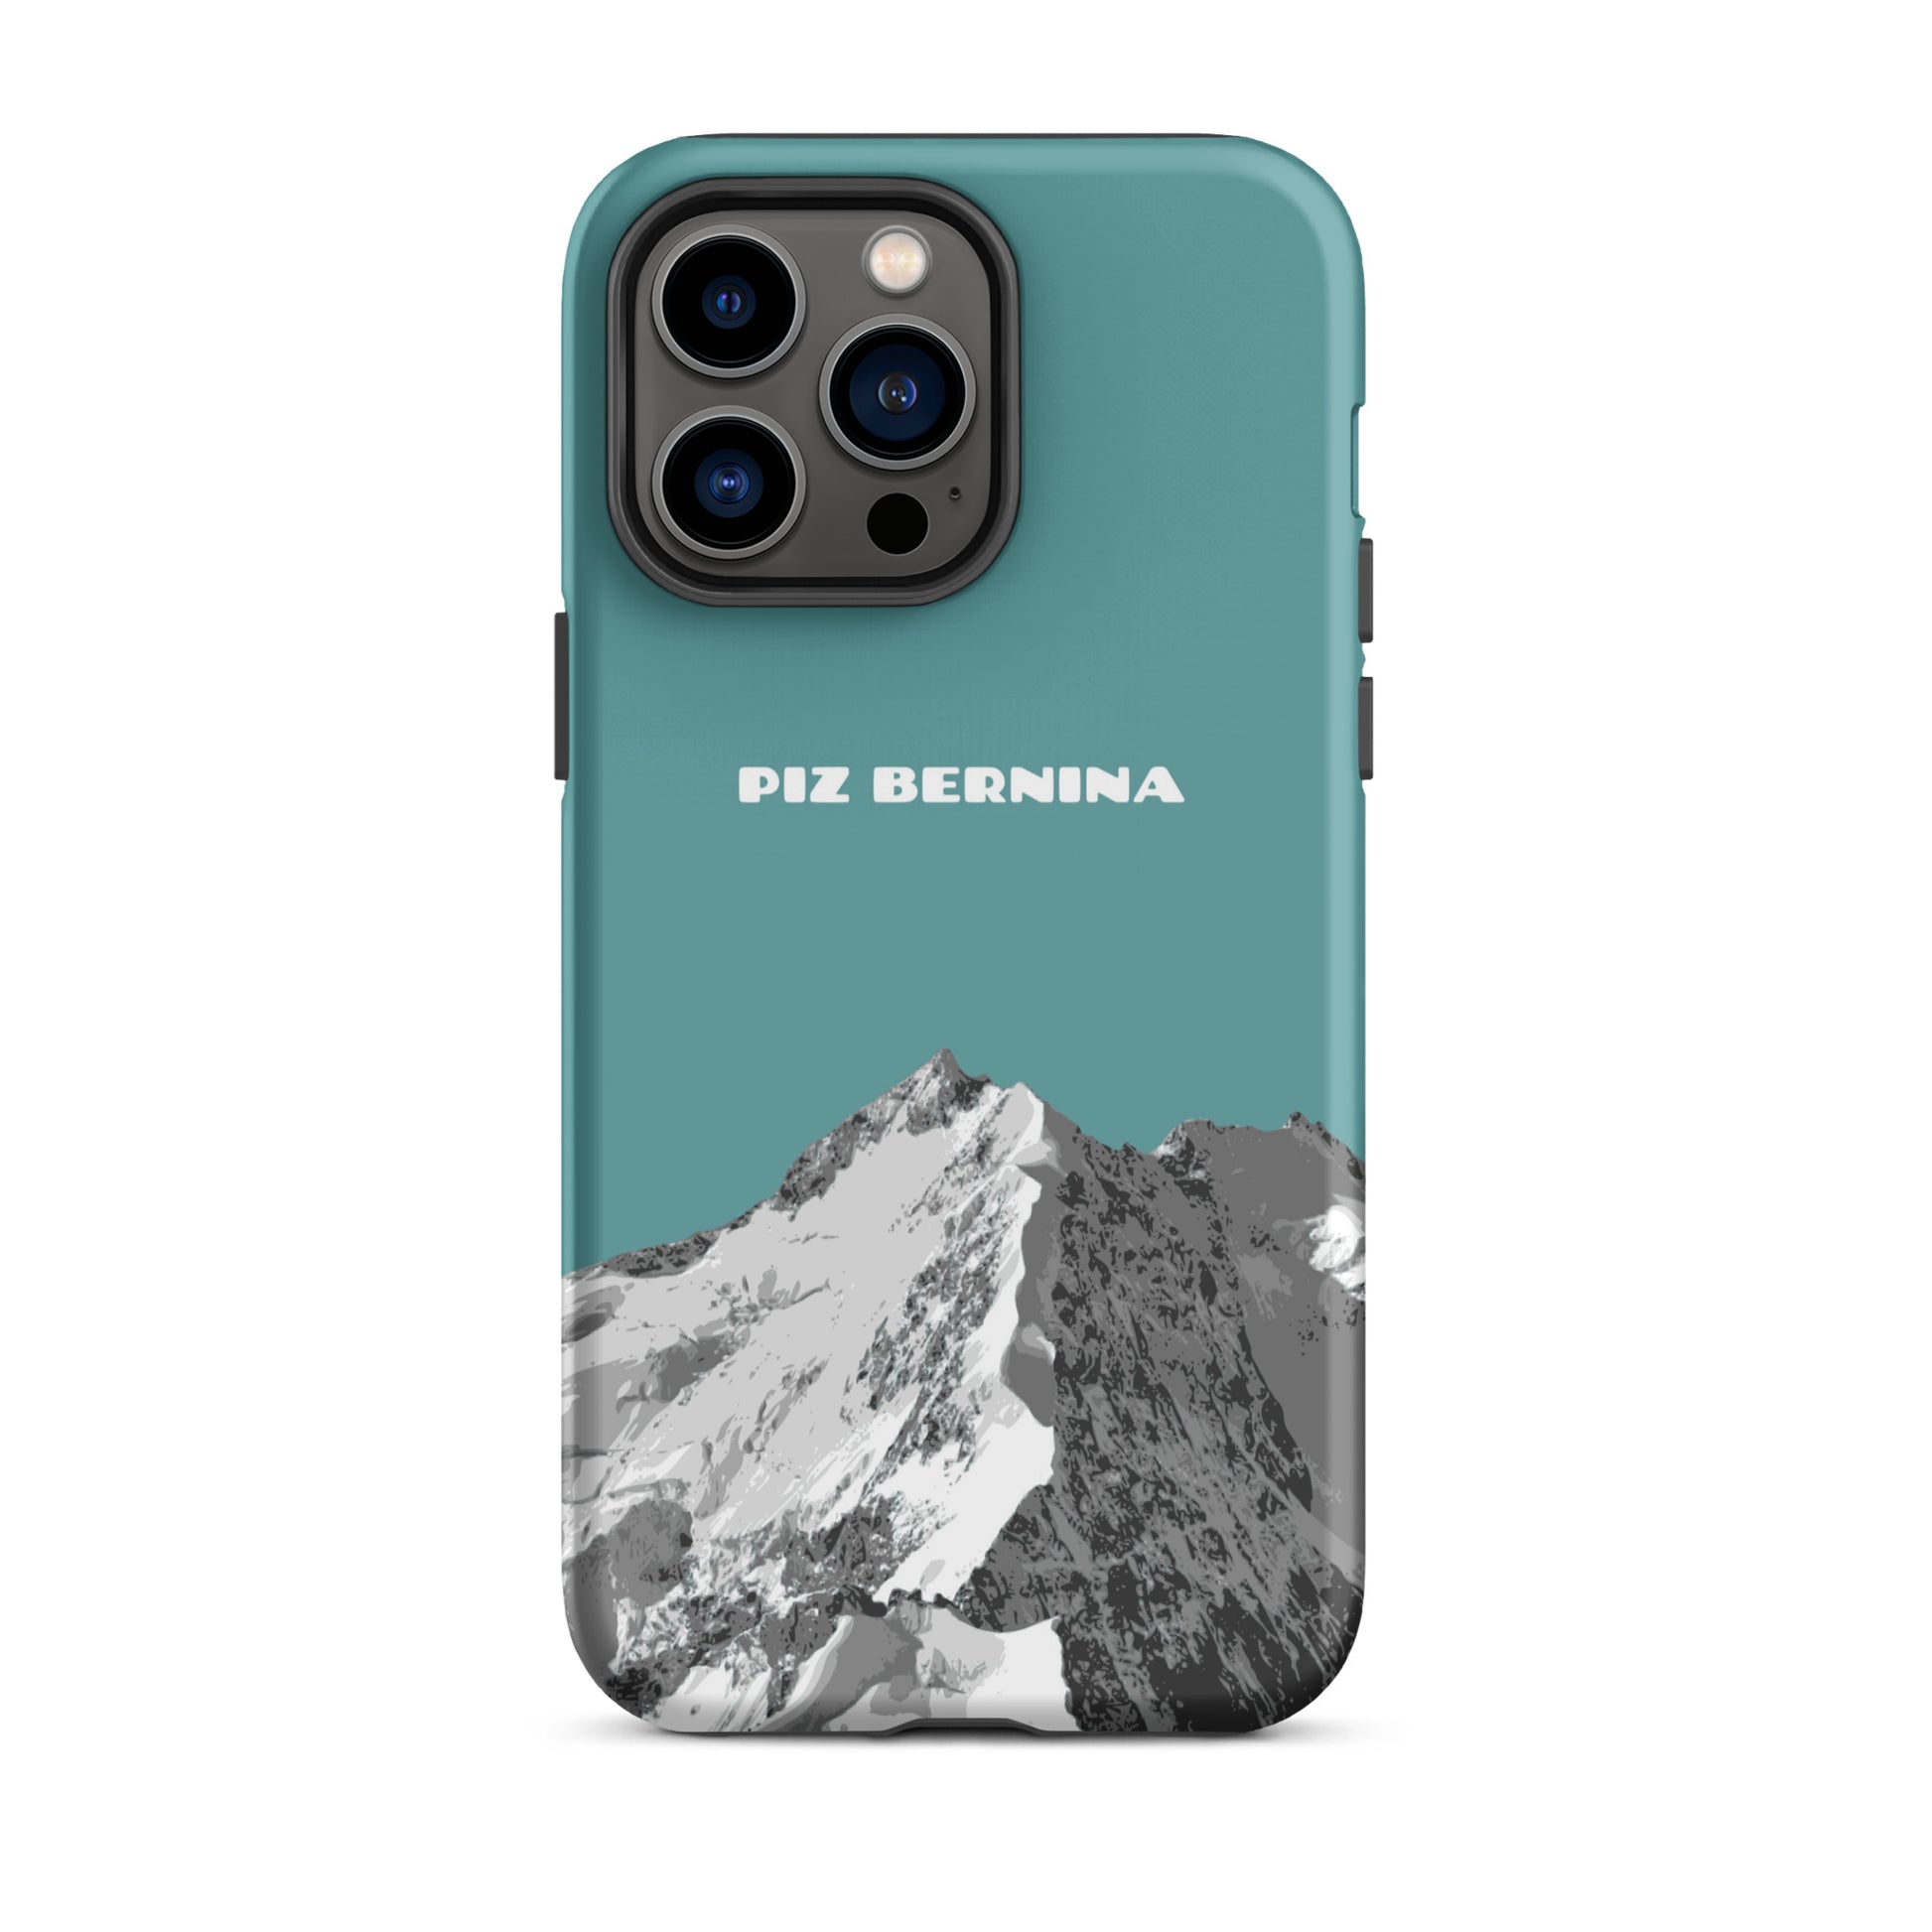 Hülle für das iPhone 14 Pro Max von Apple in der Farbe Kadettenblau, dass den Piz Bernina in Graubünden zeigt.